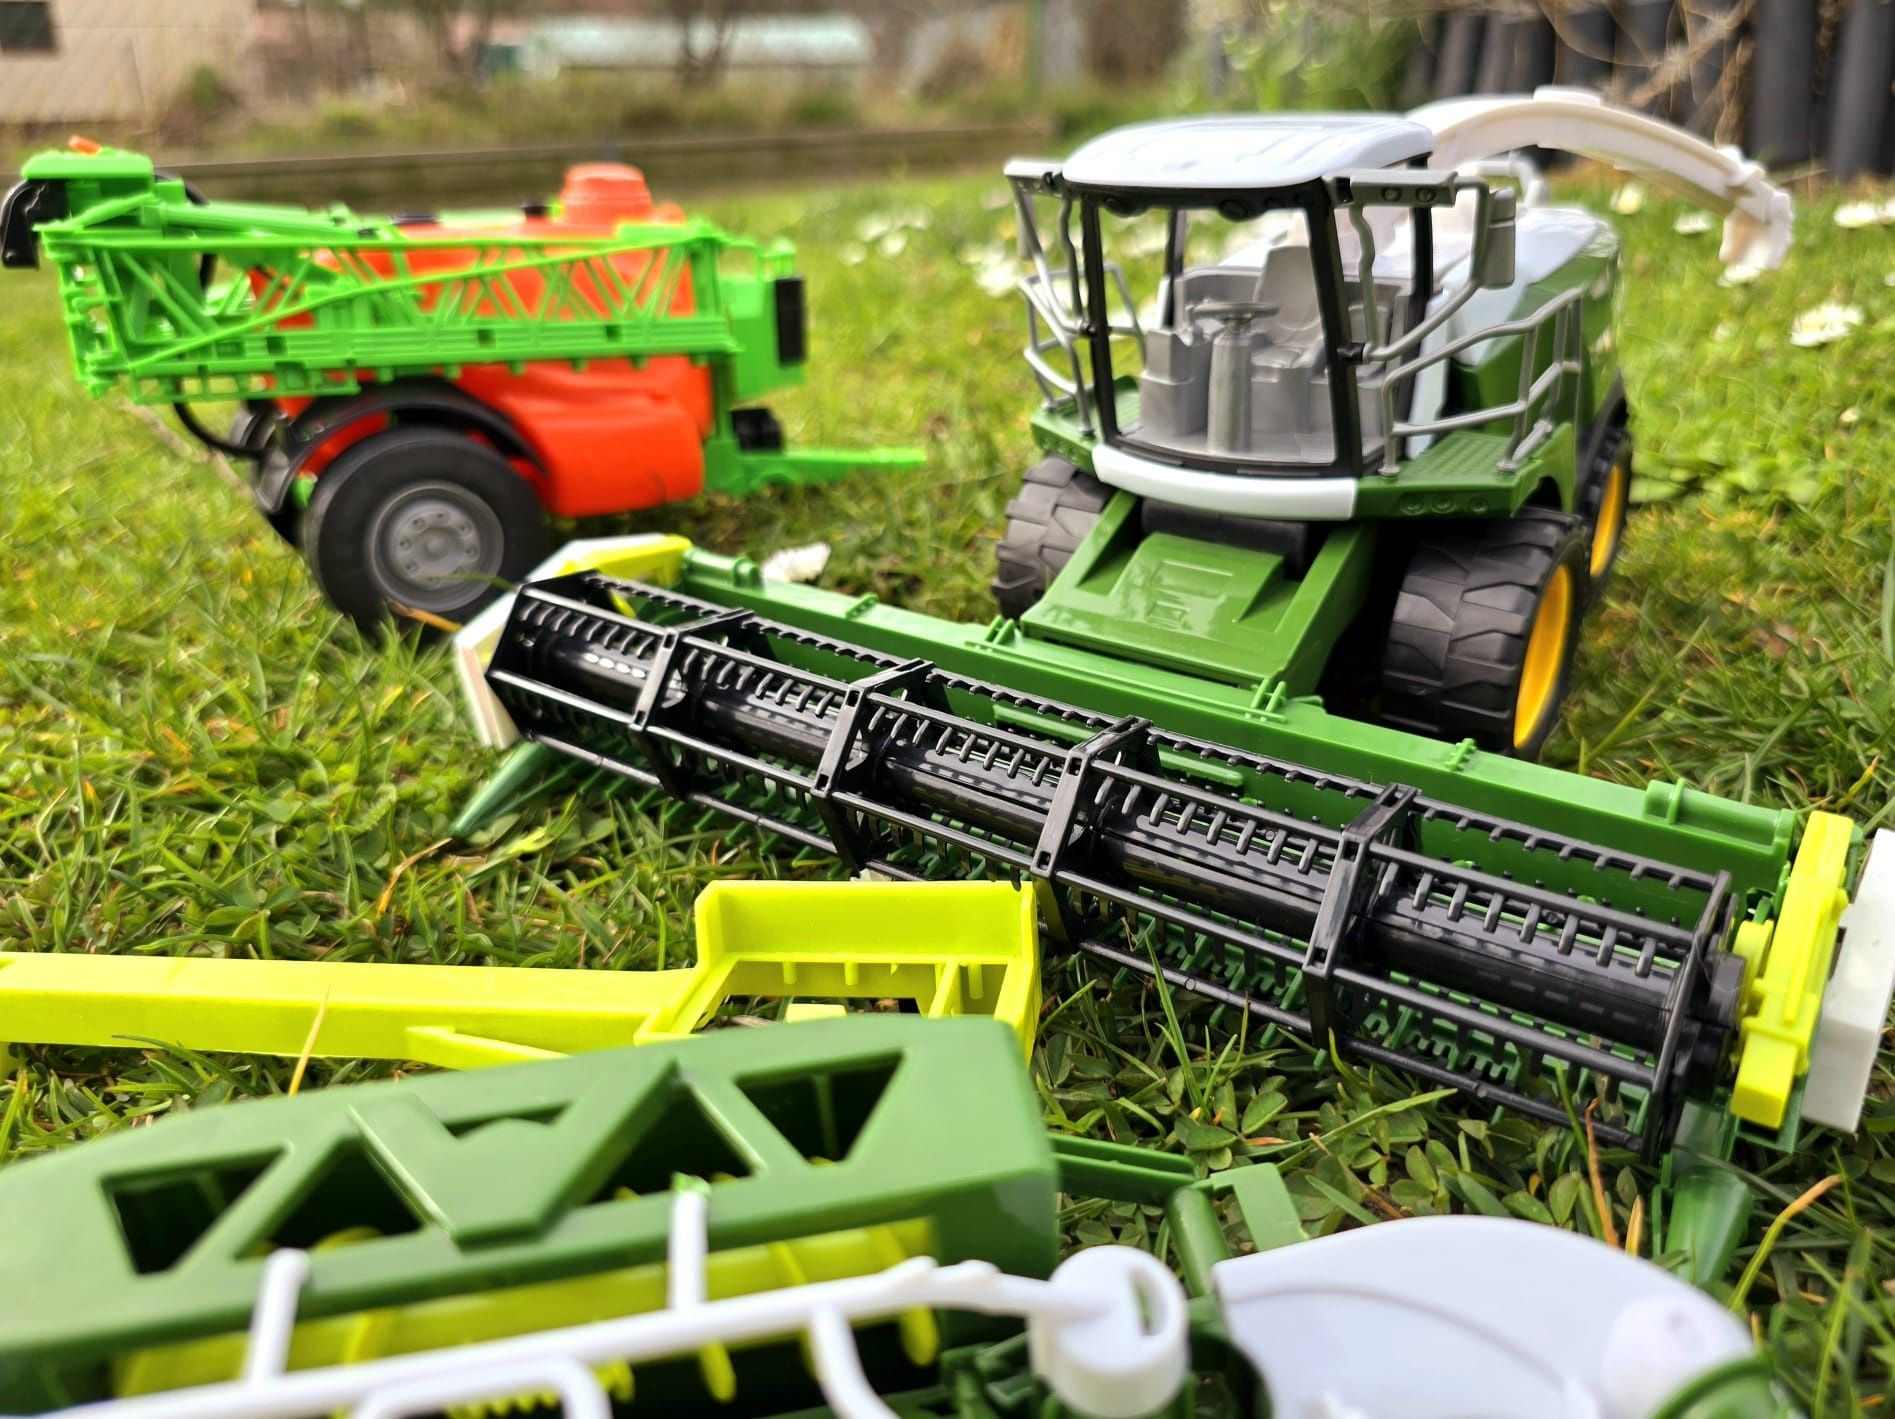 Wielki komplet Kombajn + maszyny rolnicze nowe zabawki